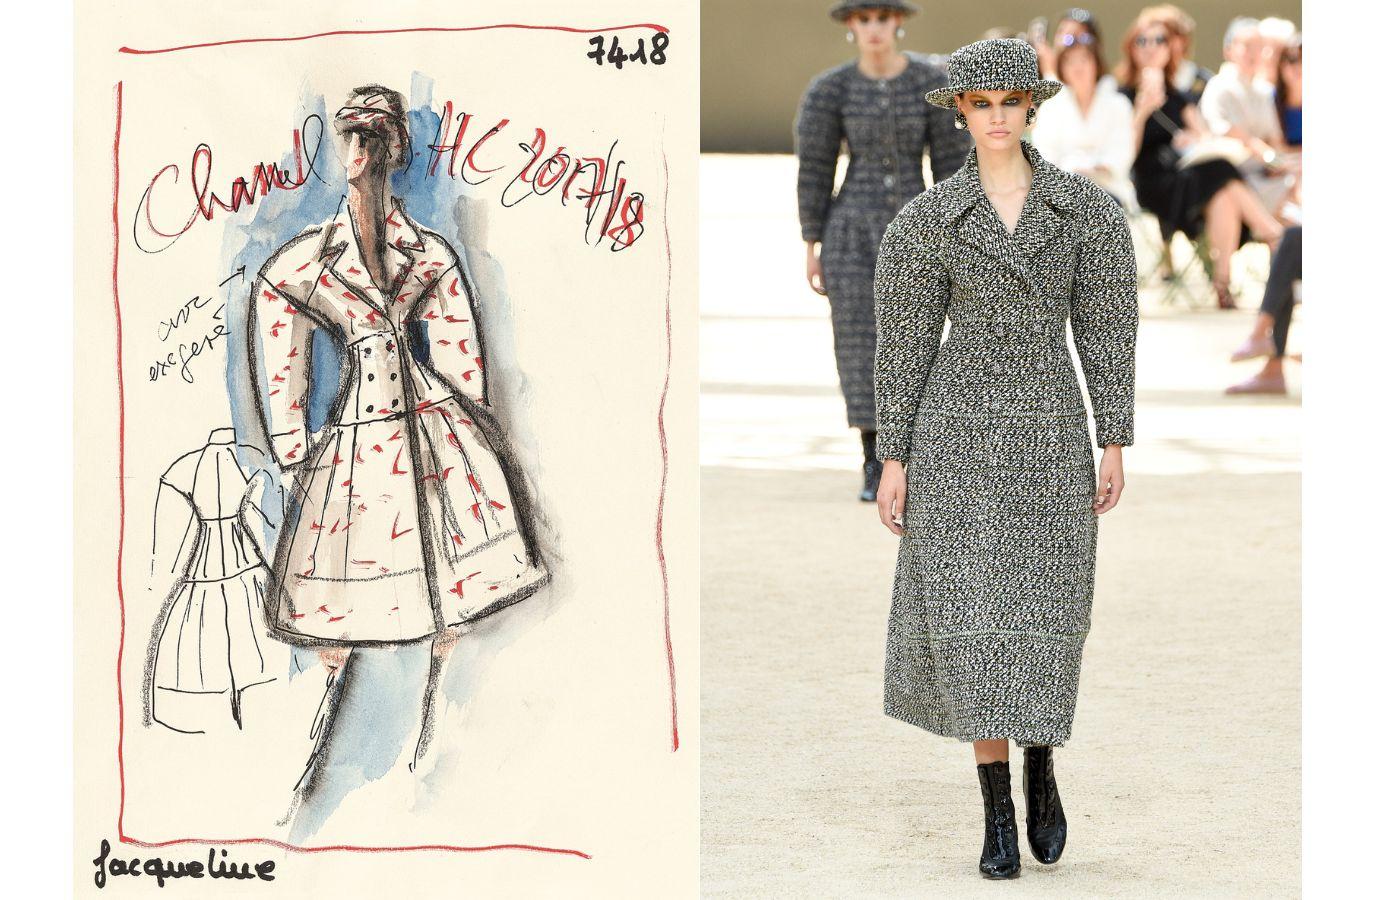 Szkic płaszcza z kolekcji Chanel haute couture jesień–zima 2017/18 oraz zdjęcie z pokazu, na którym modelka prezentuje gotowy projekt (Fot. Peter White/Getty Images dzięki uprzejmości Metropolitan Museum of Art)